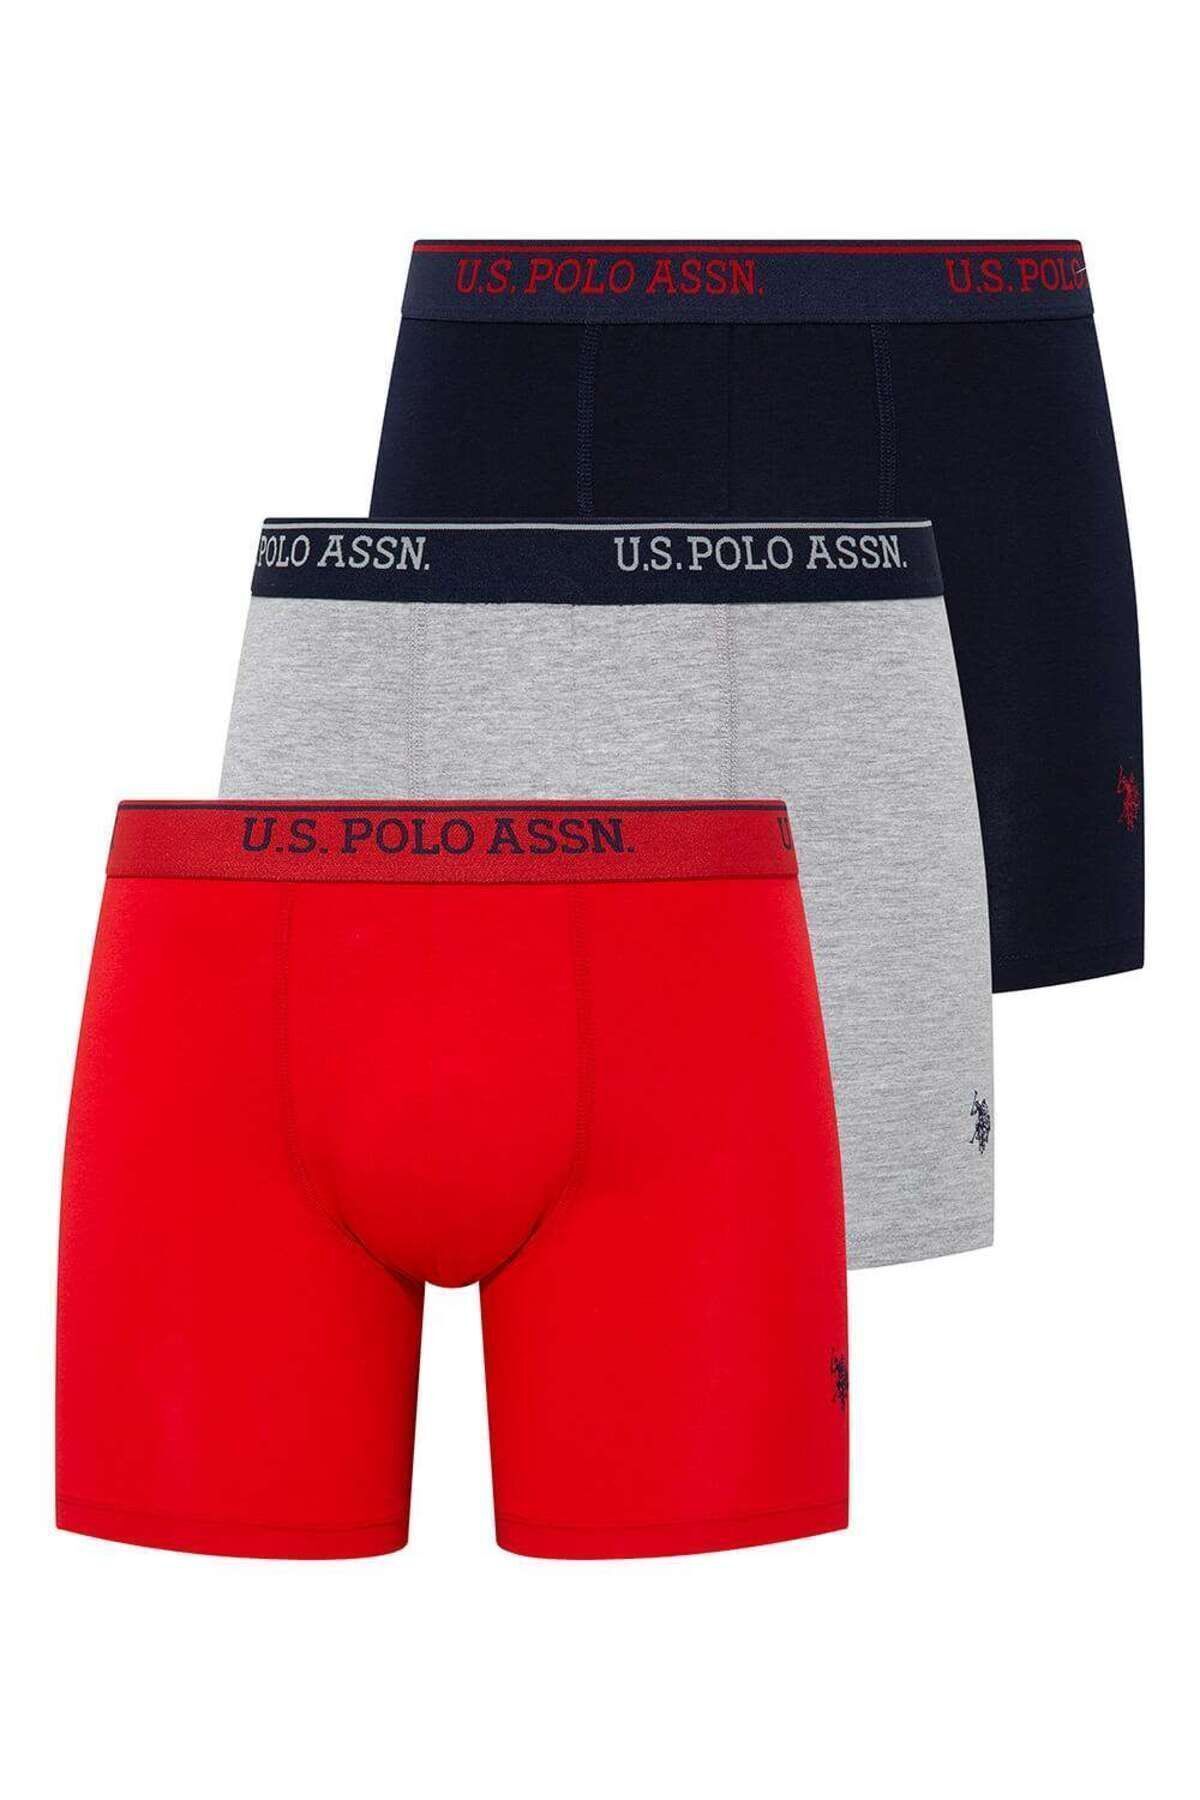 U.S. Polo Assn. Erkek Kırmızı - Gri Melanj - Lacivert 3 Lü Uzun Paçalı Boxer 80454